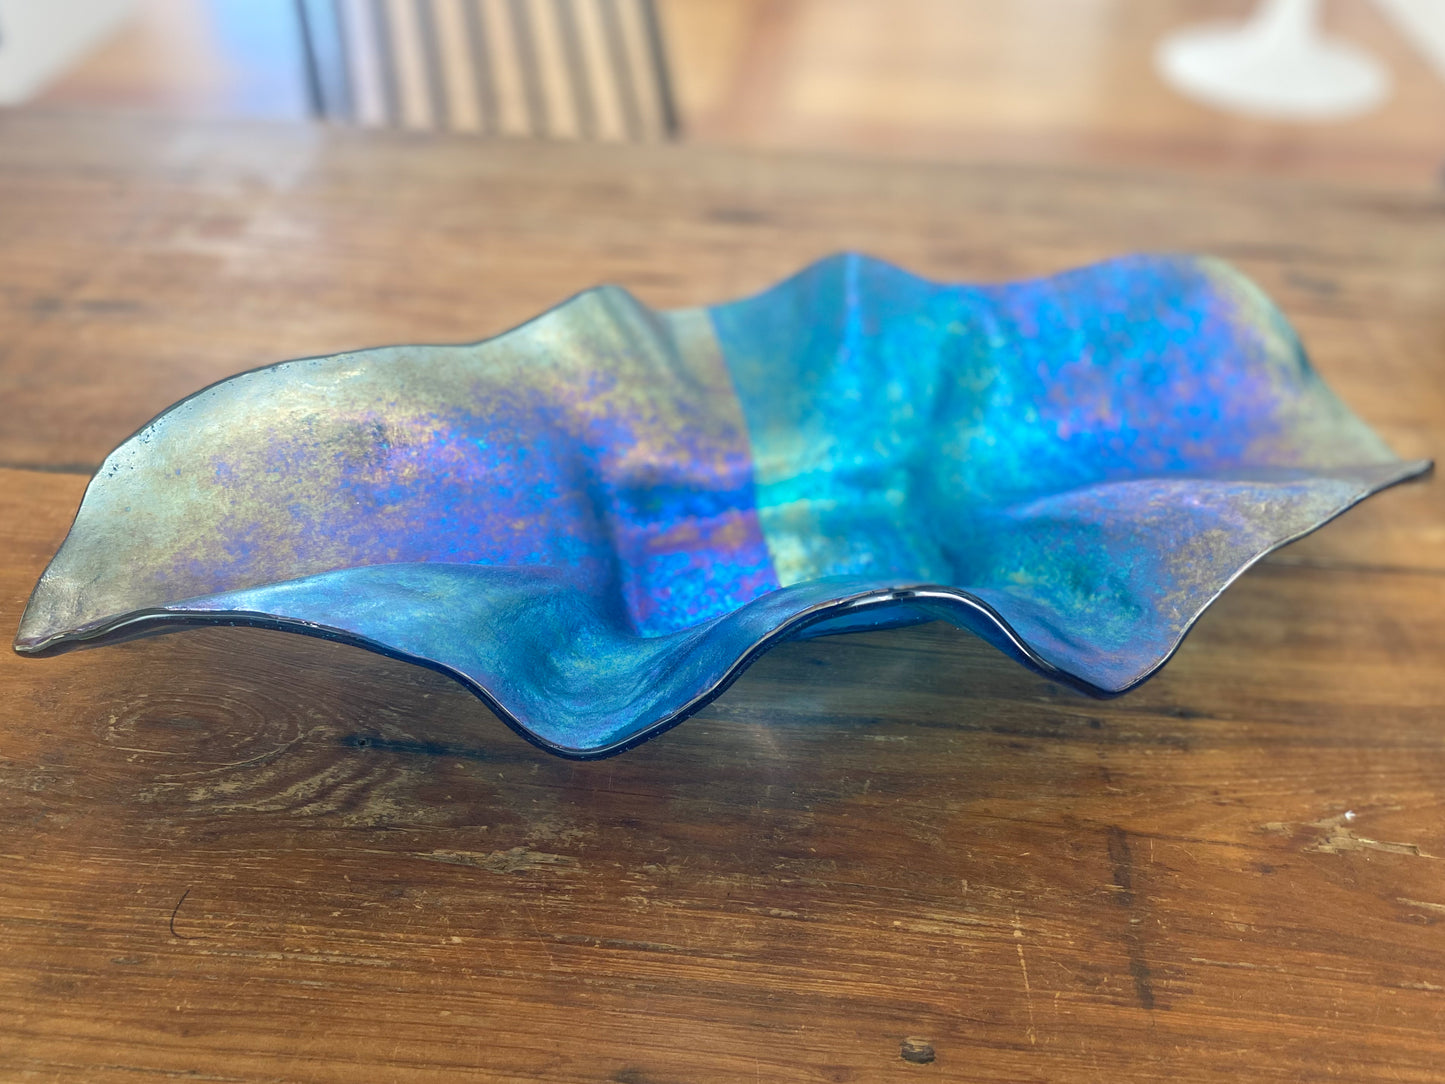 Aquamarine Sculptural Tray